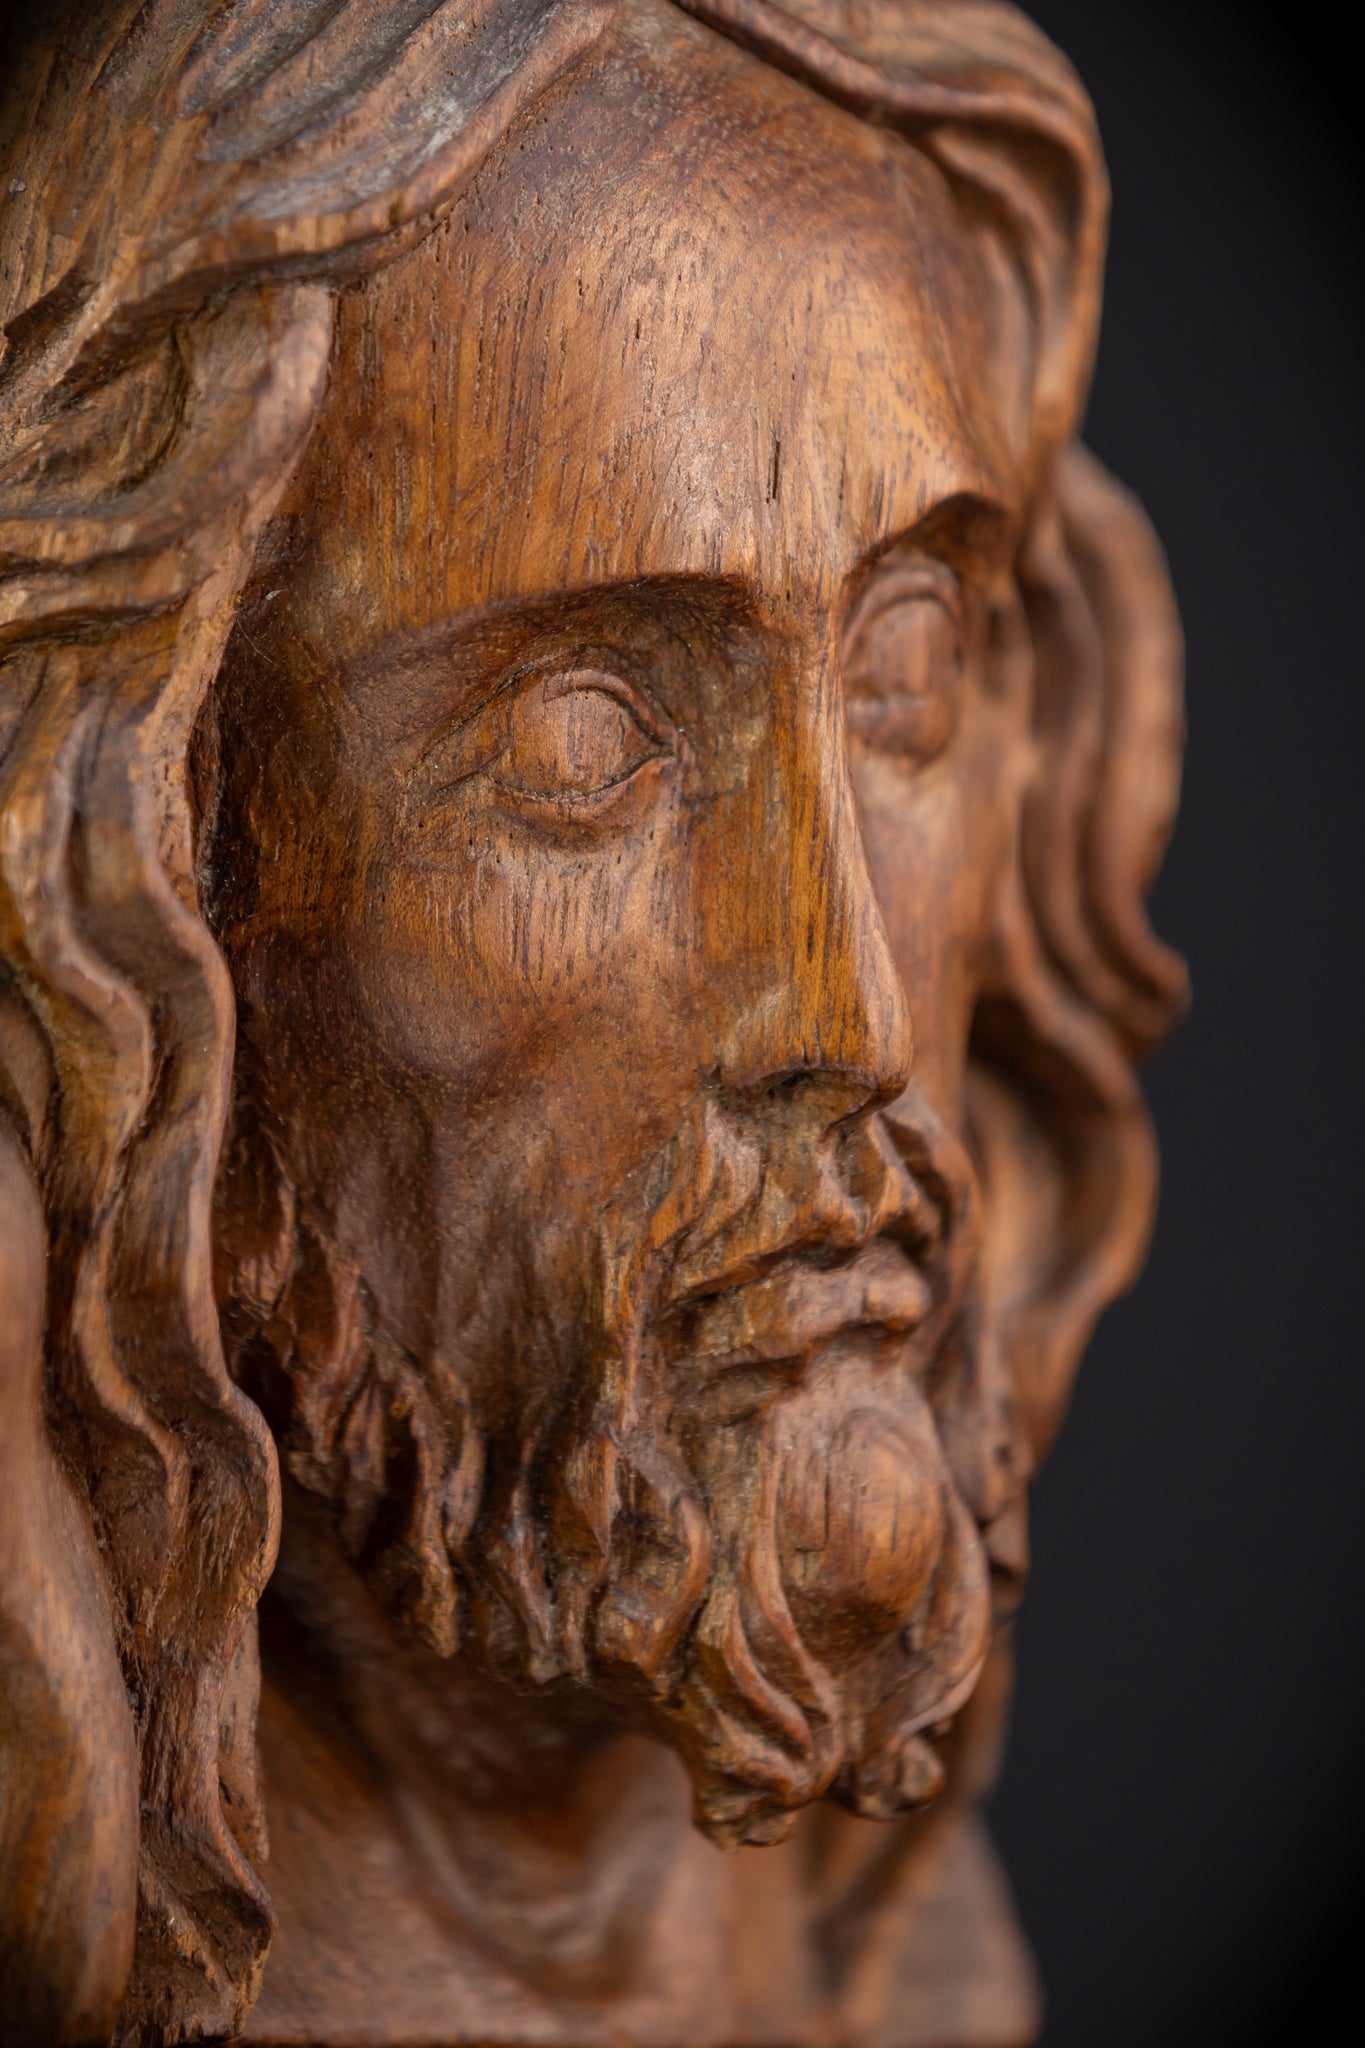 Jesus Christ Wood Carving Sculpture | 1800s Antique | 7.3" / 18.5 cm